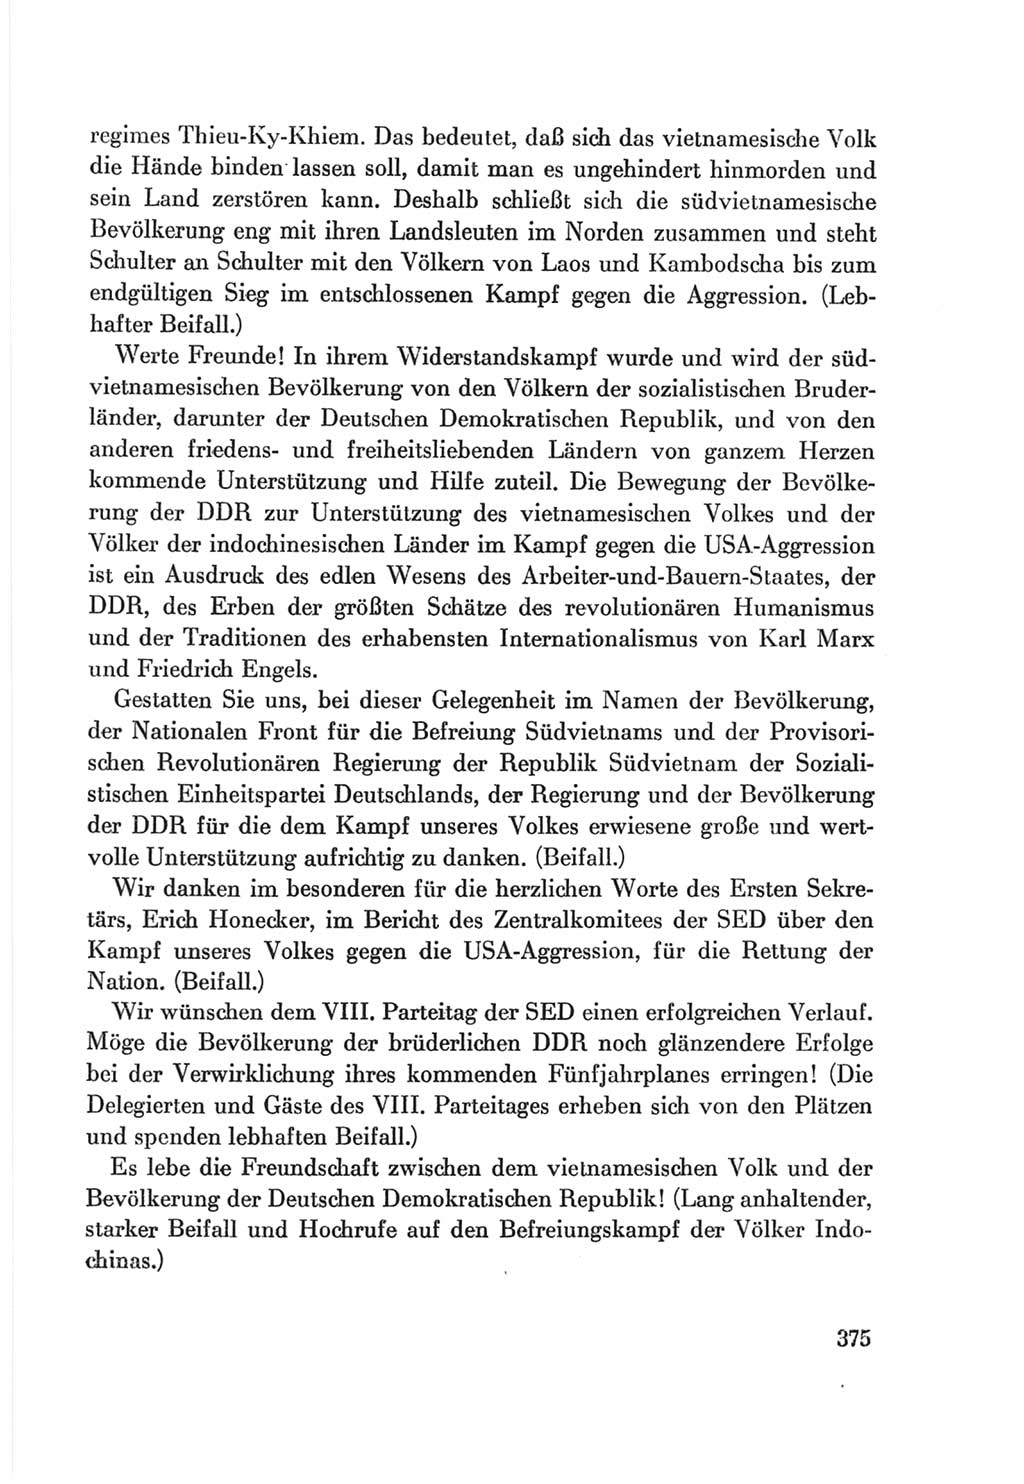 Protokoll der Verhandlungen des Ⅷ. Parteitages der Sozialistischen Einheitspartei Deutschlands (SED) [Deutsche Demokratische Republik (DDR)] 1971, Band 1, Seite 375 (Prot. Verh. Ⅷ. PT SED DDR 1971, Bd. 1, S. 375)